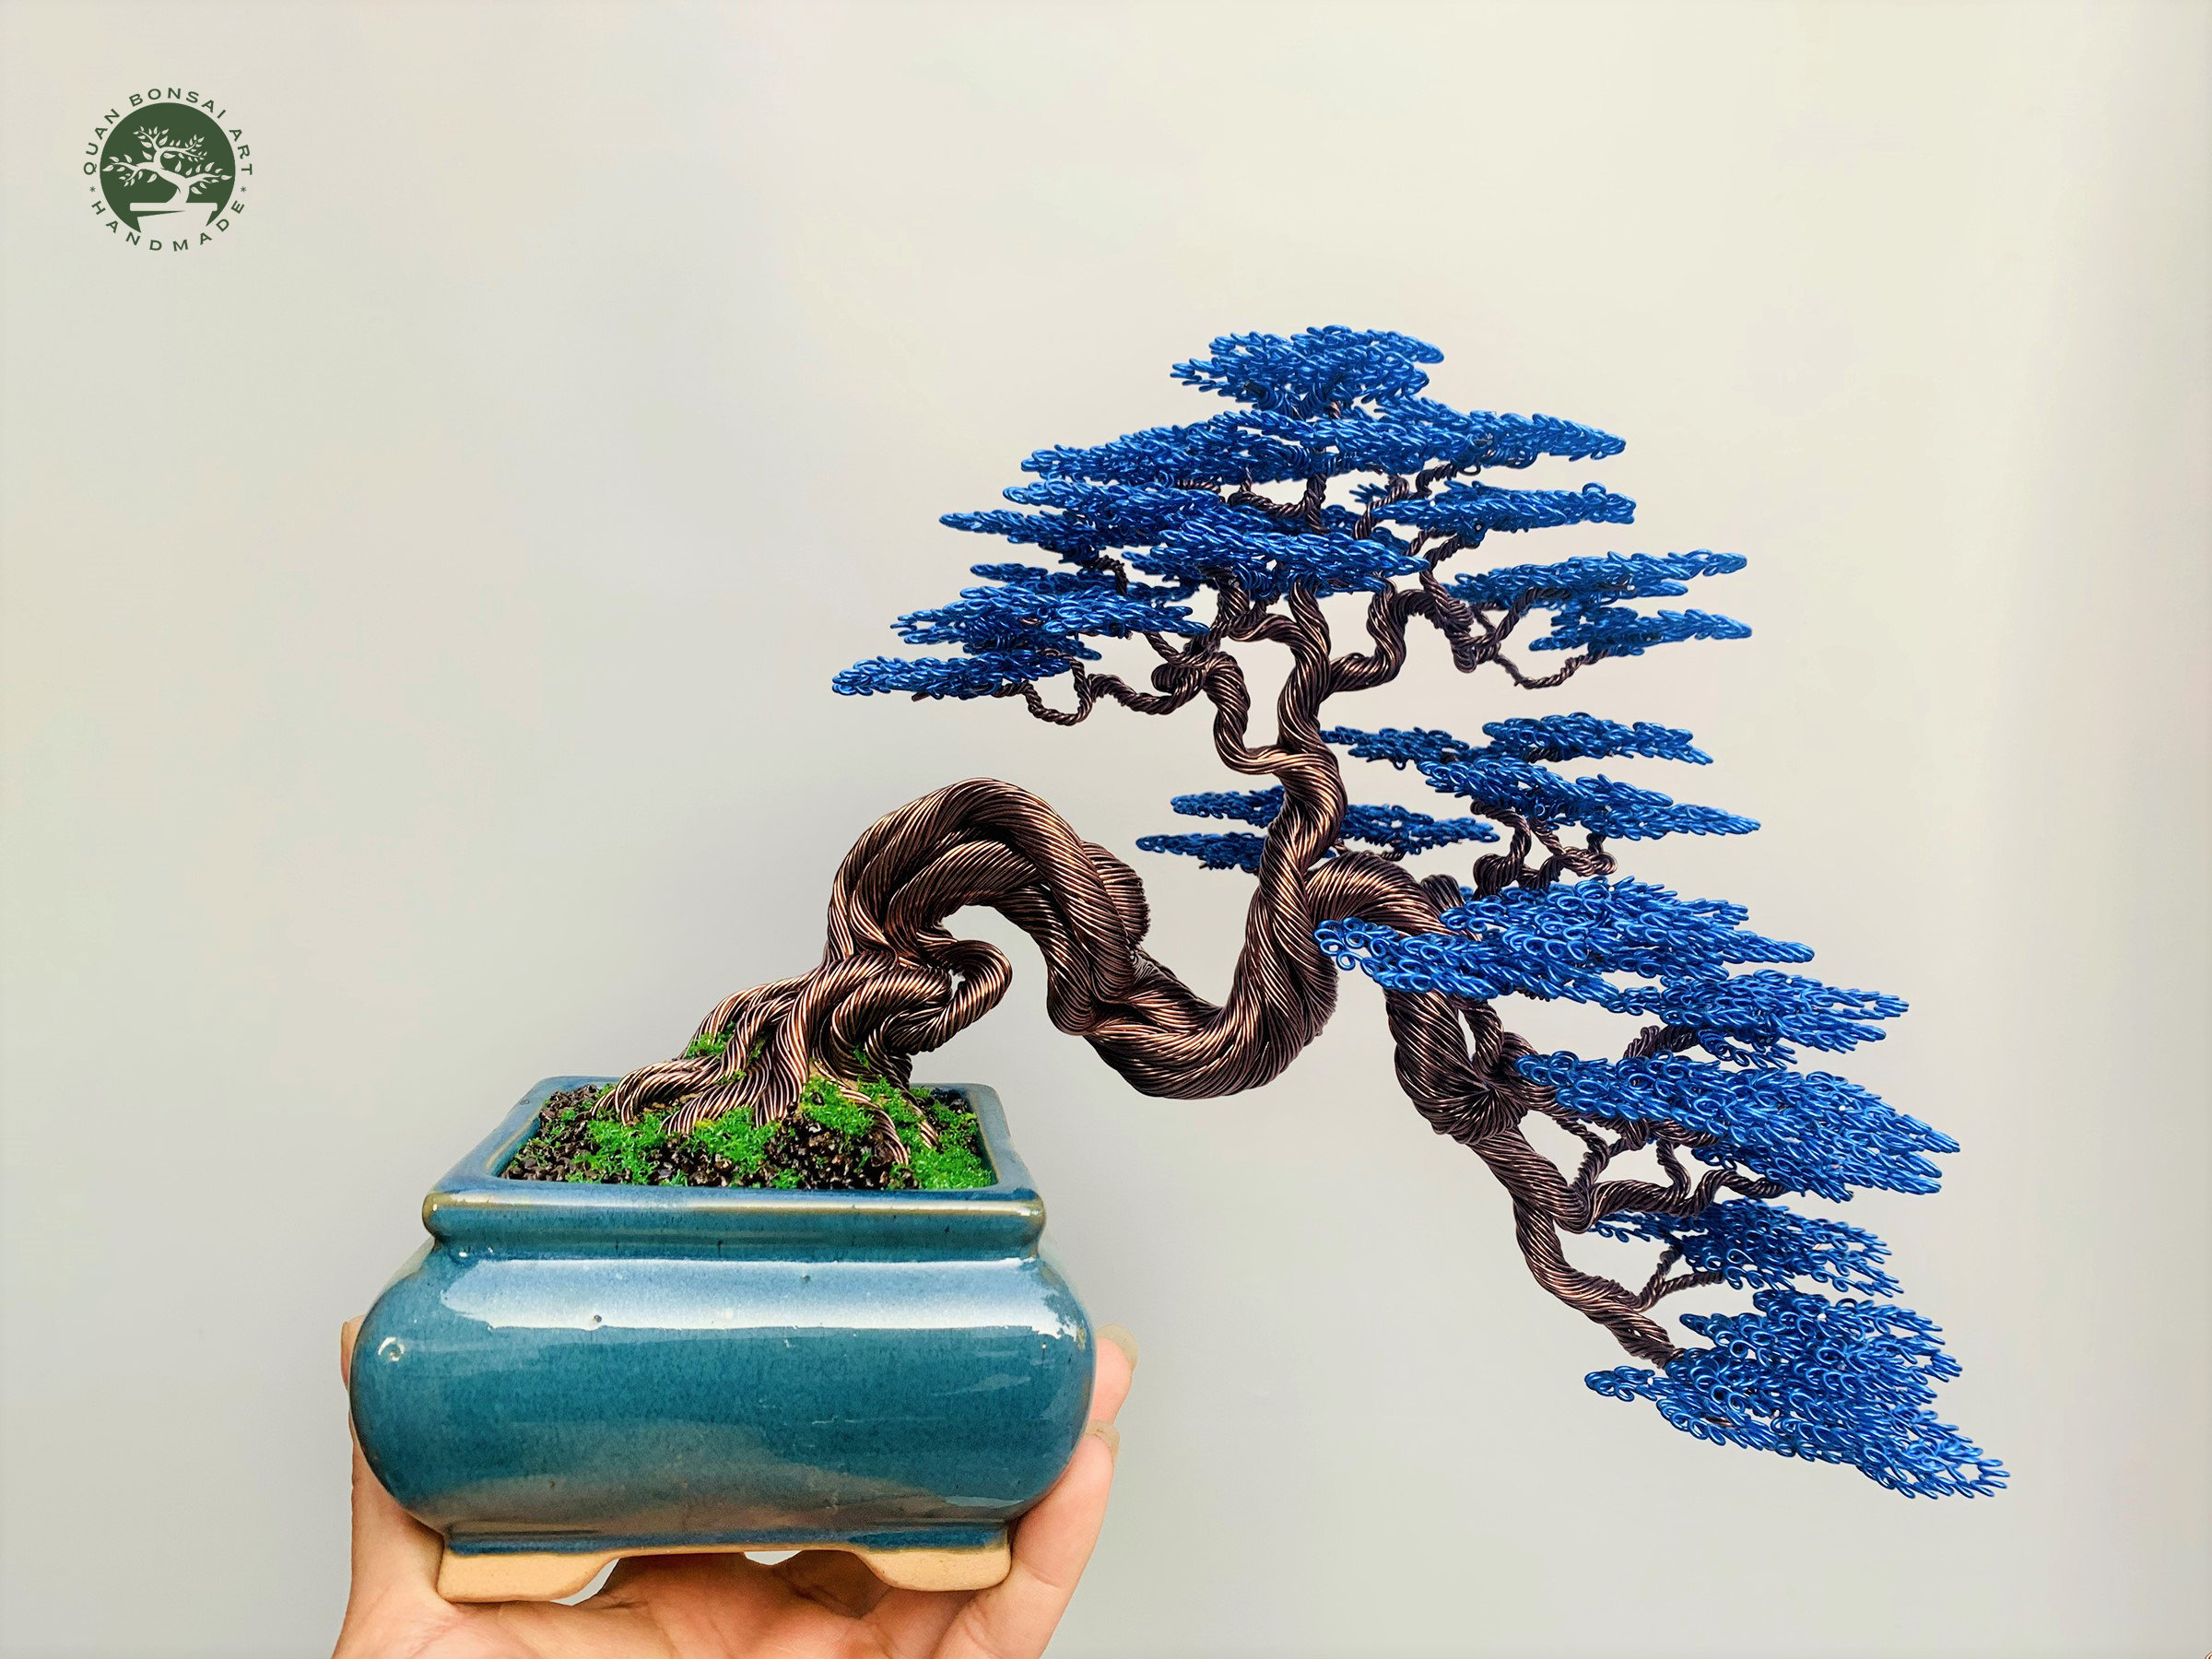 Escultura de árbol bonsái de alambre artificial grande con maceta de  cerámica, alambre de aluminio y